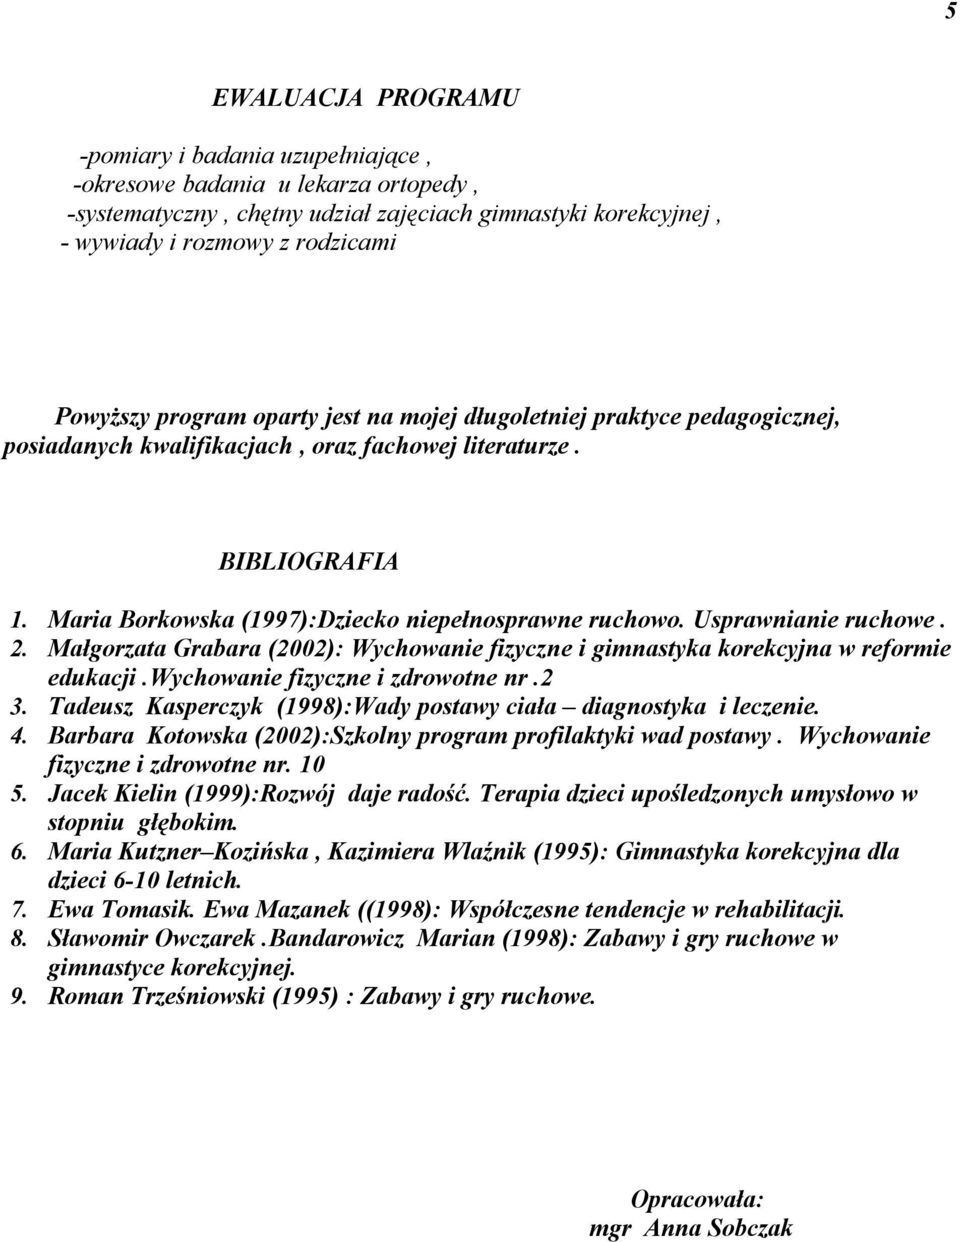 Usprawnianie ruchowe. 2. Małgorzata Grabara (2002): Wychowanie fizyczne i gimnastyka korekcyjna w reformie edukacji.wychowanie fizyczne i zdrowotne nr.2 3.